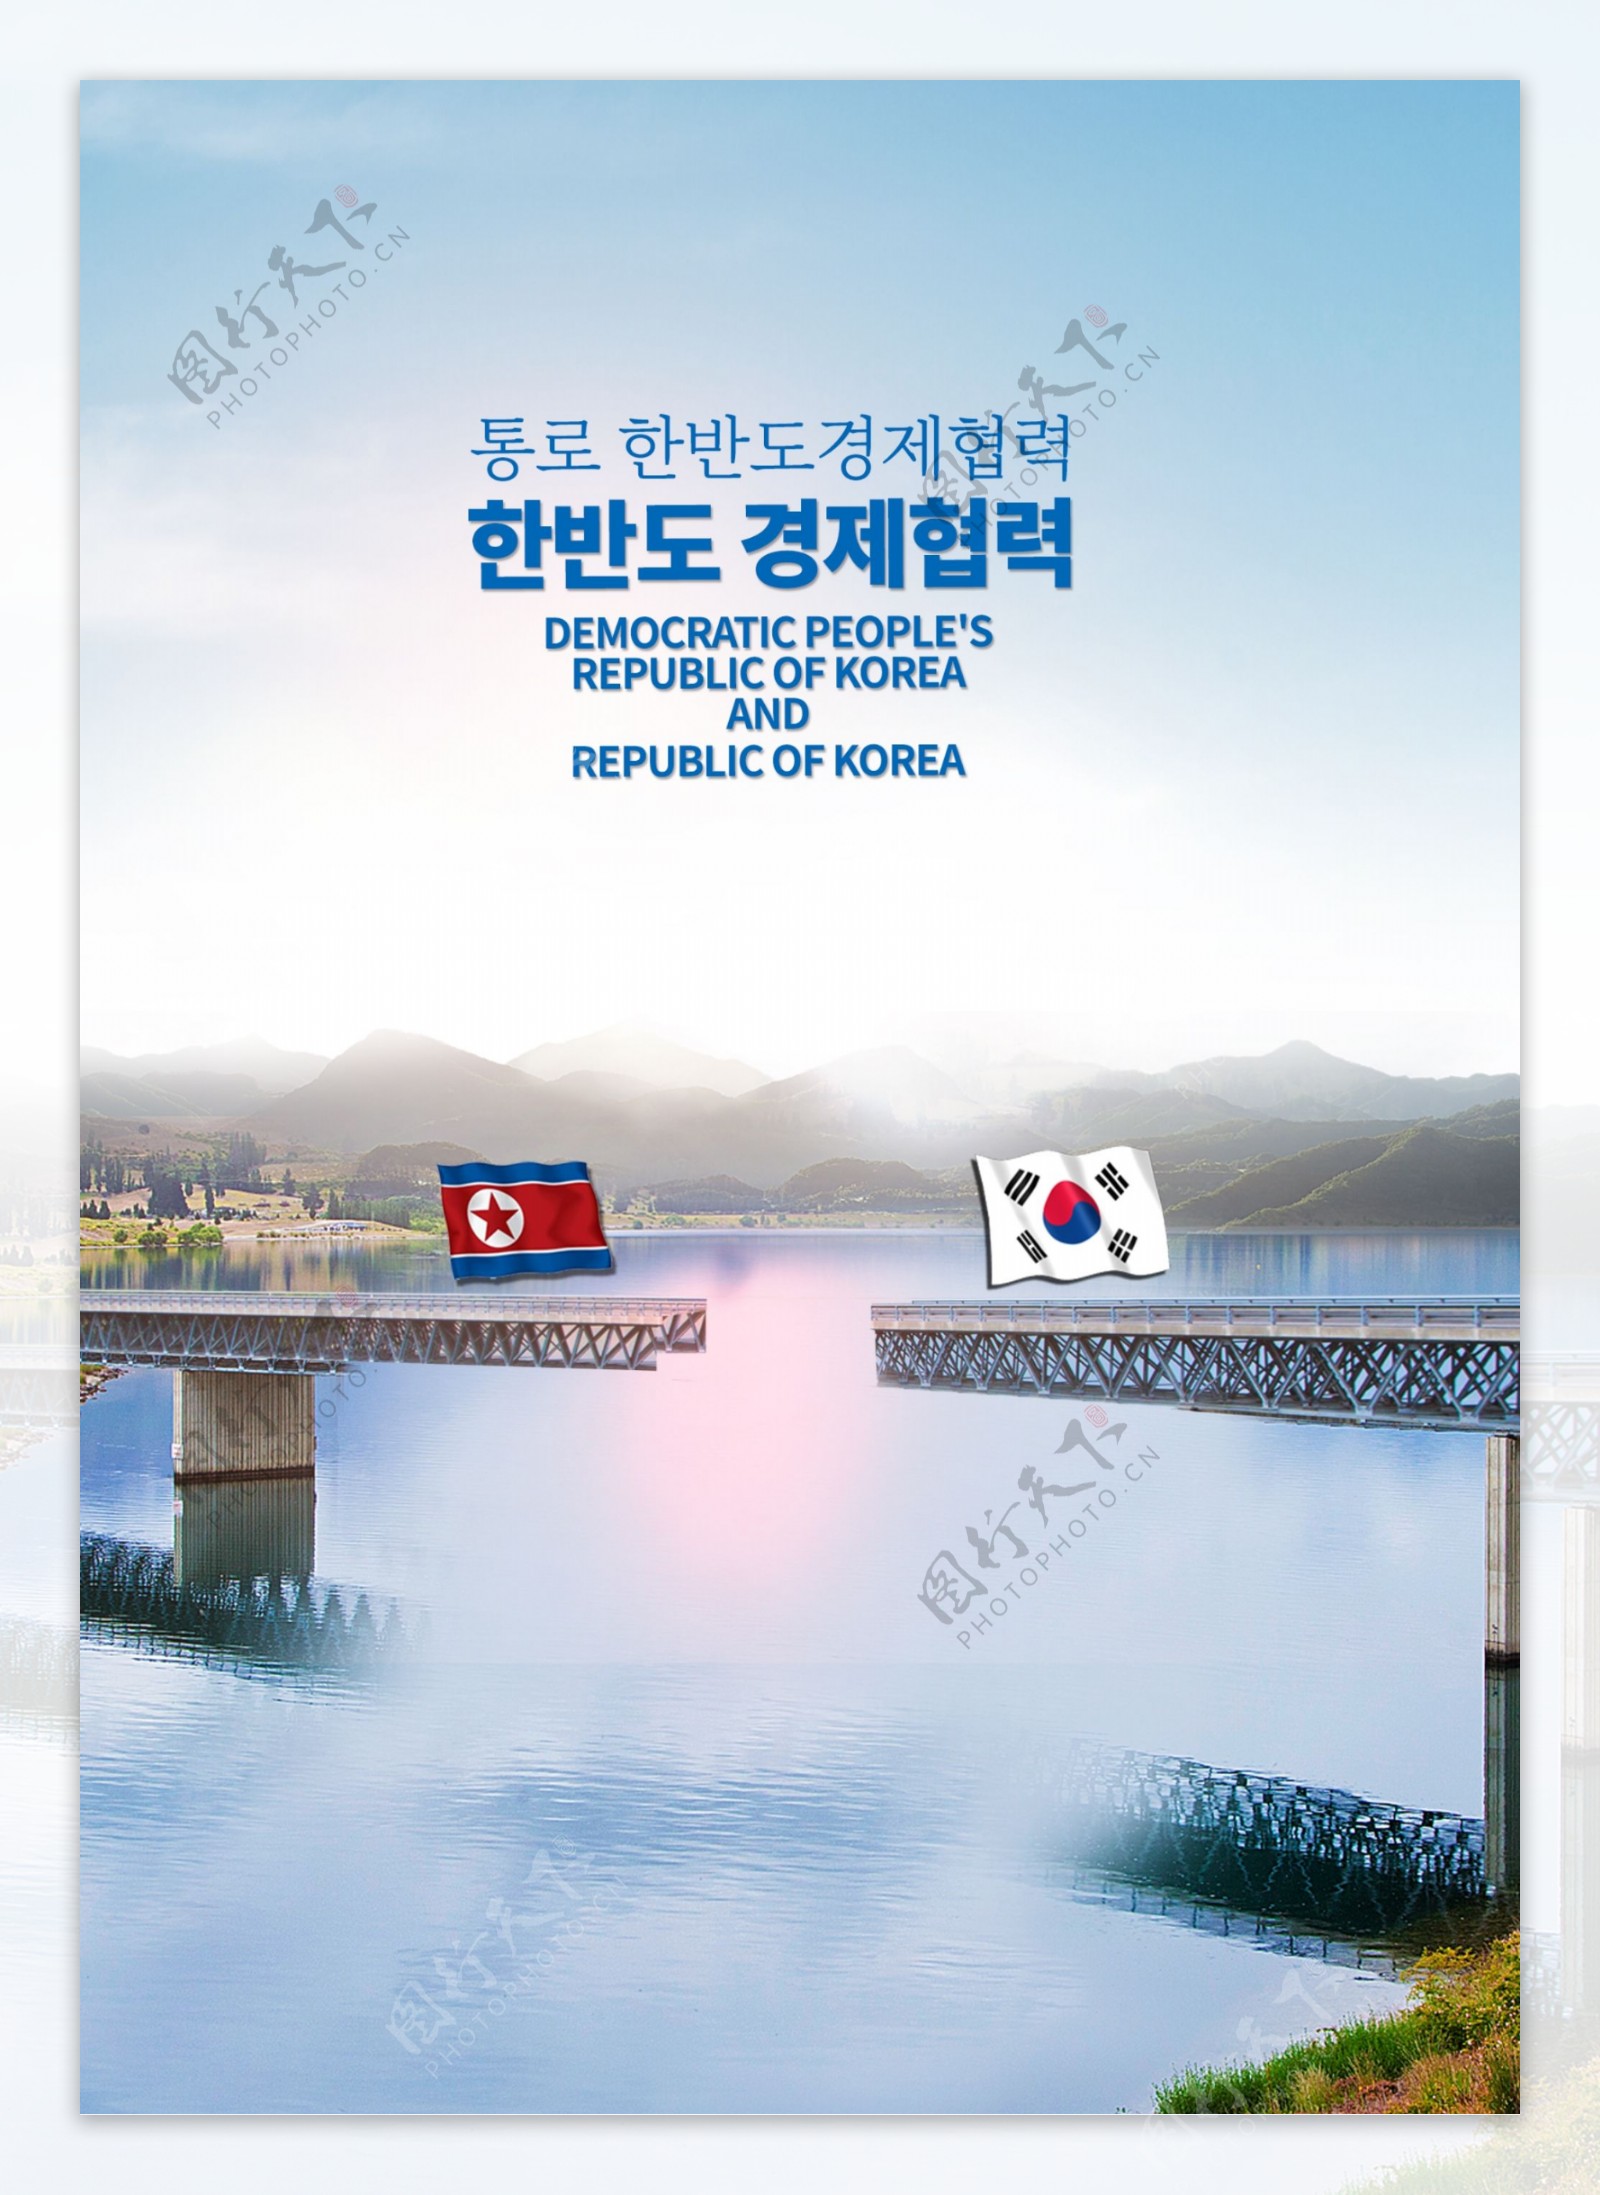 关于建立朝鲜半岛外交关系和商业合作与发展的海报